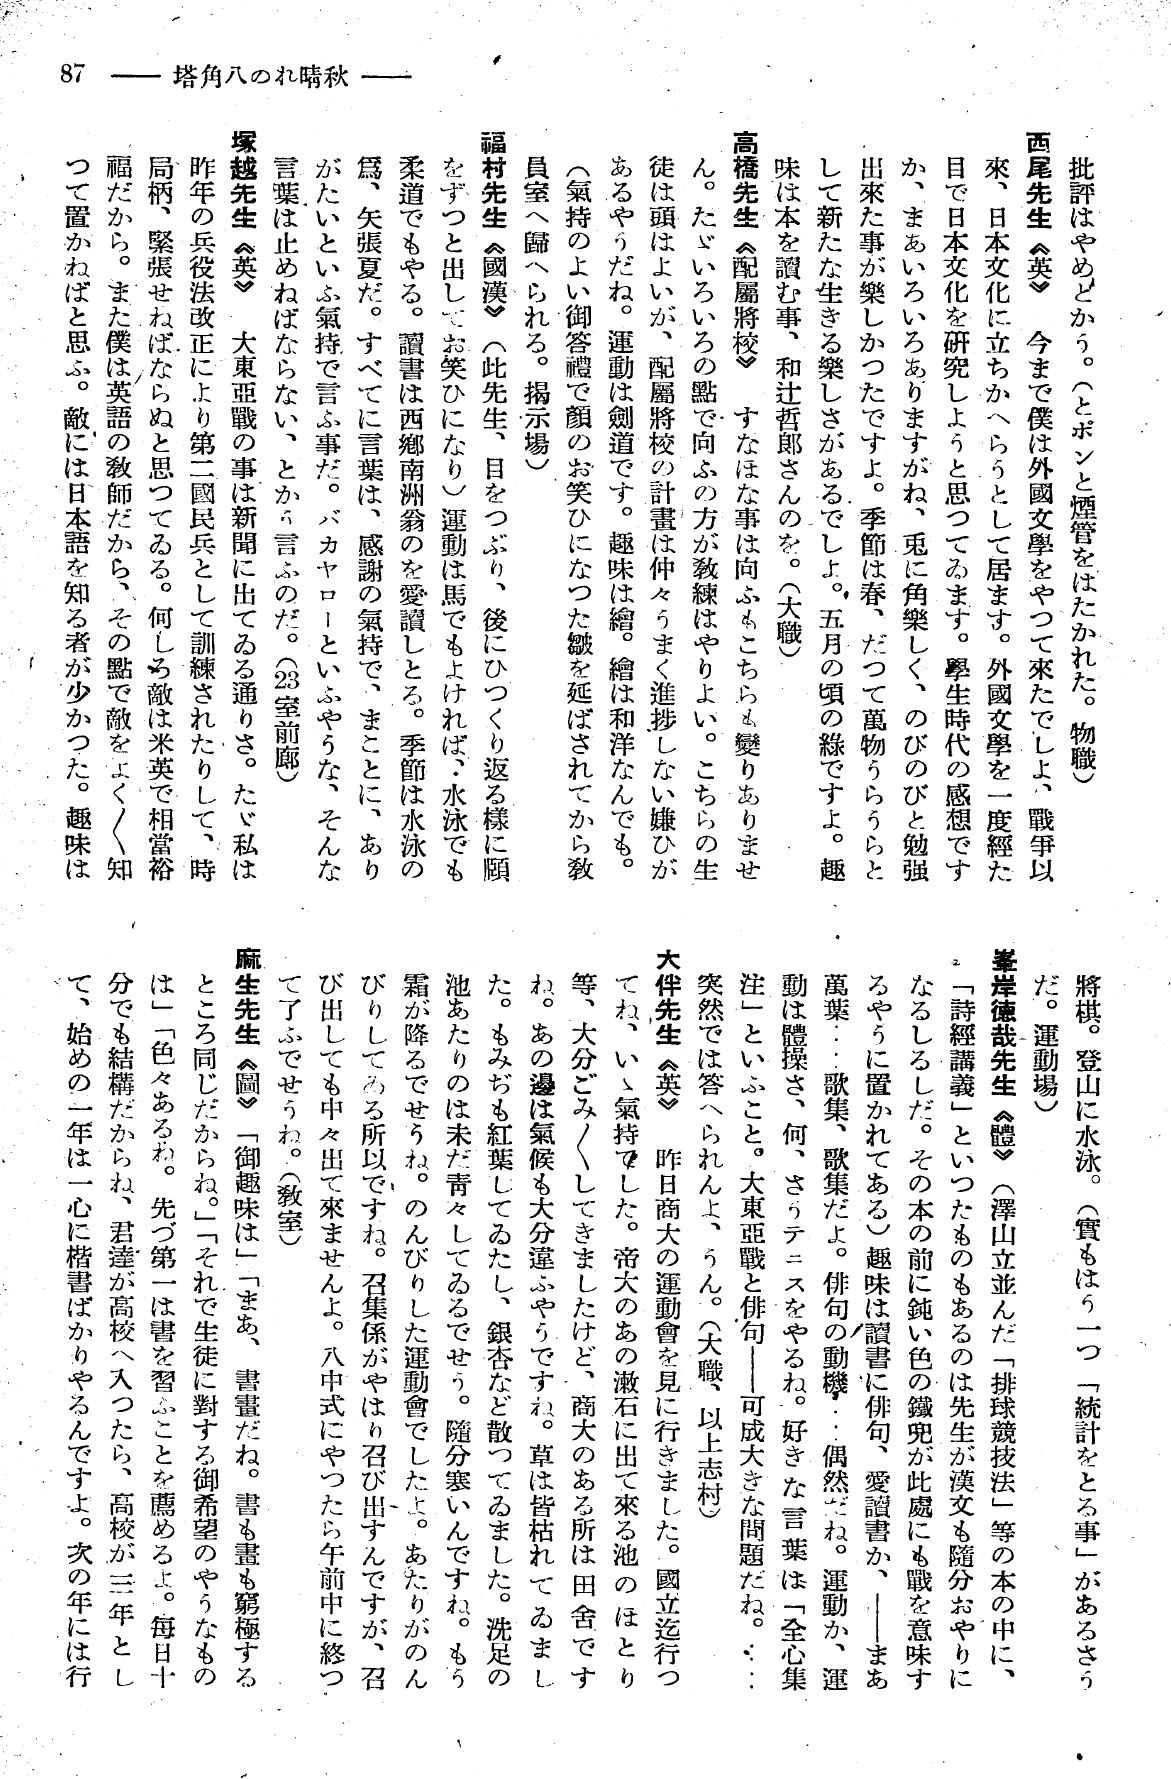 報國団雑誌 第19号 152 教師ぶら下がり取材 秋晴れの八角塔02.jpg